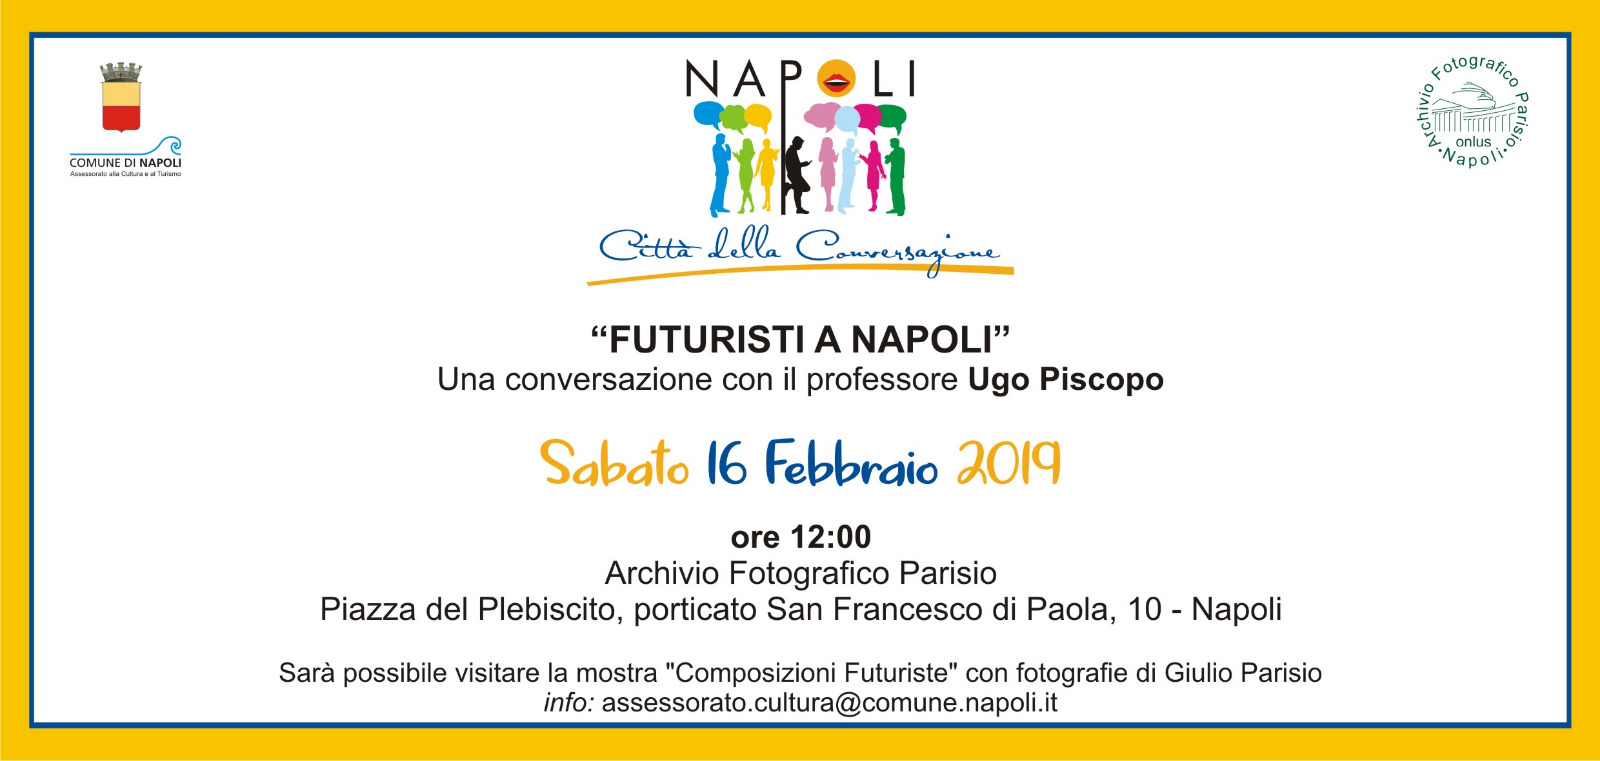 Futuristi a Napoli: una conversazione con il Professor Ugo Piscopo